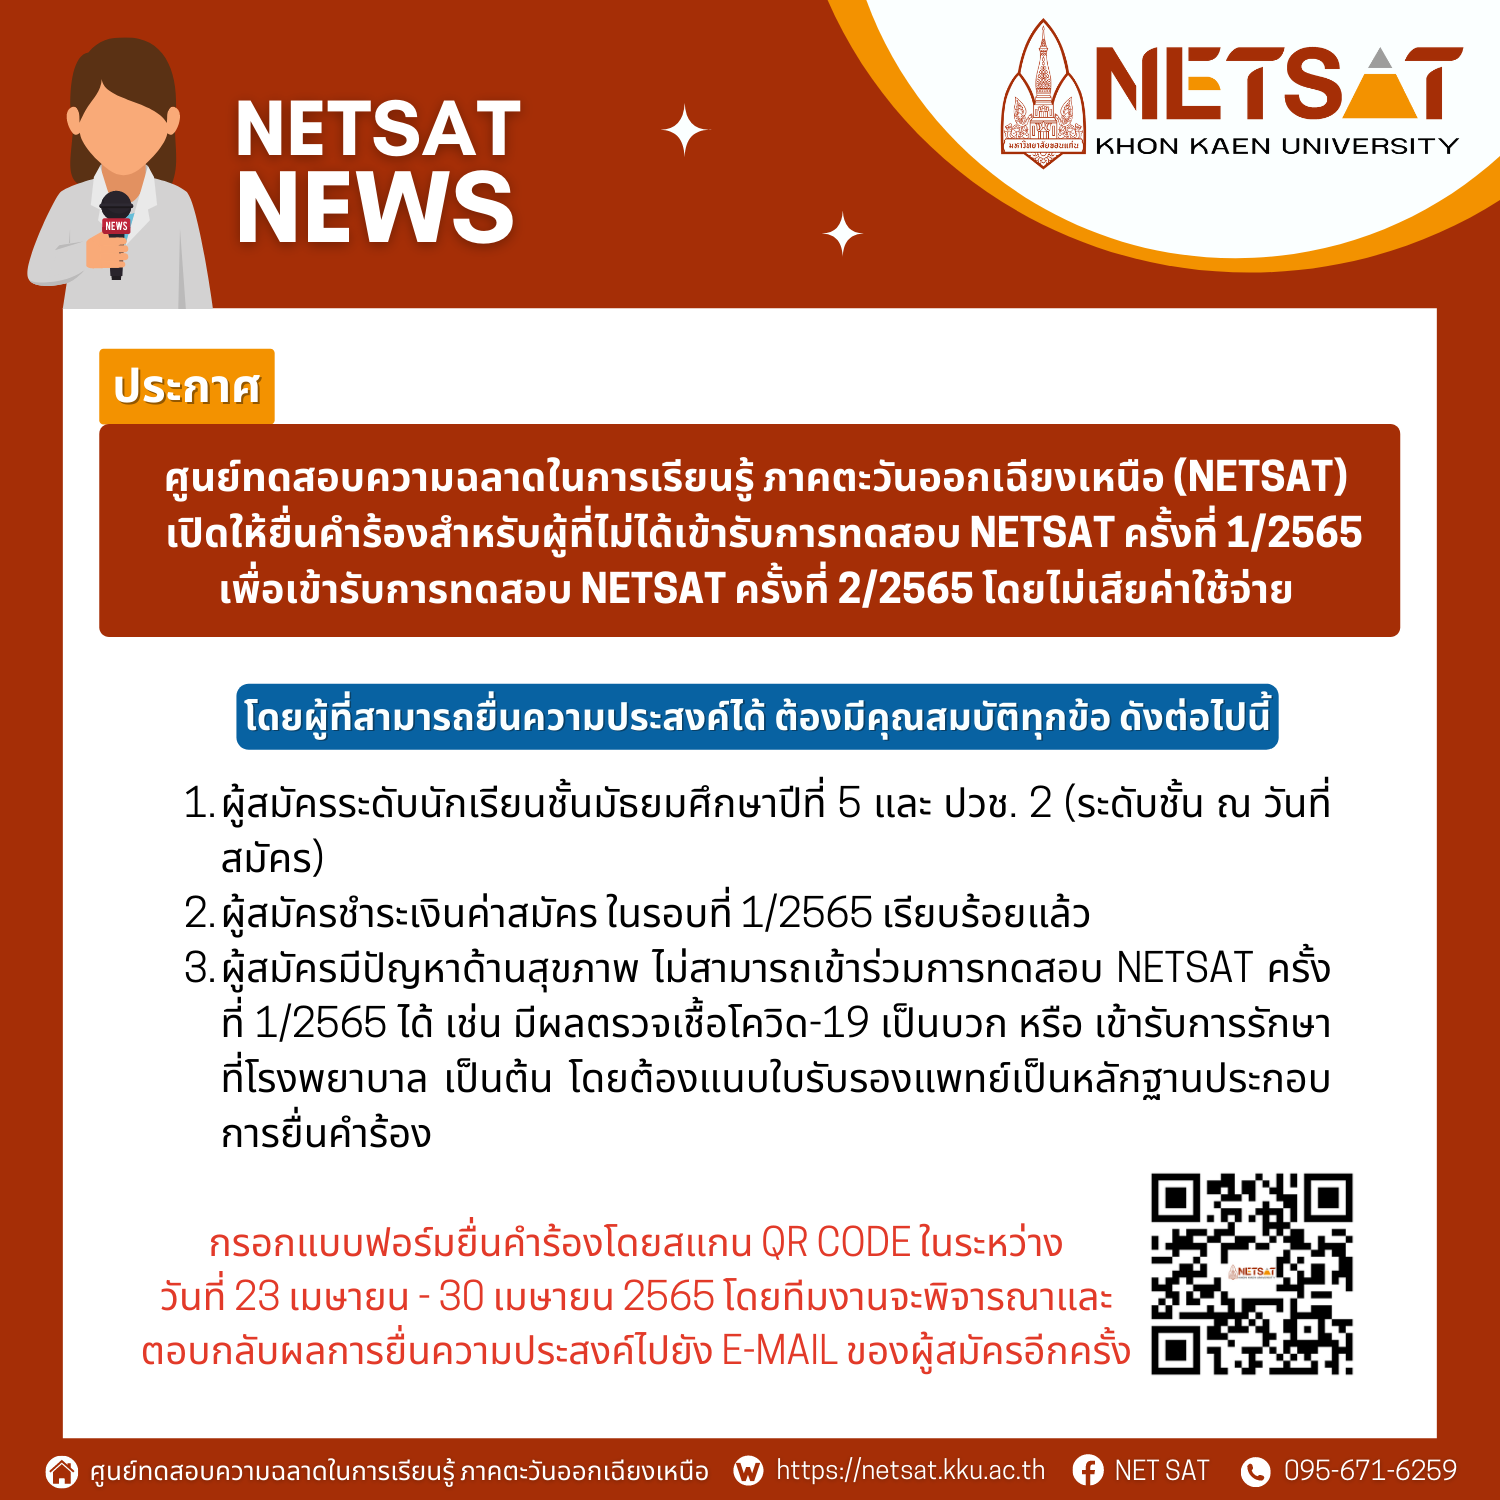 เปิดให้ยื่นคำร้อง สำหรับผู้ที่ไม่ได้รับการทดสอบ NETSAT ครั้งที่ 1/2565 เพื่อเข้ารับการทดสอบ NETSAT ครั้งที่ 2/2565 โดยไม่เสียค่าใช้จ่าย